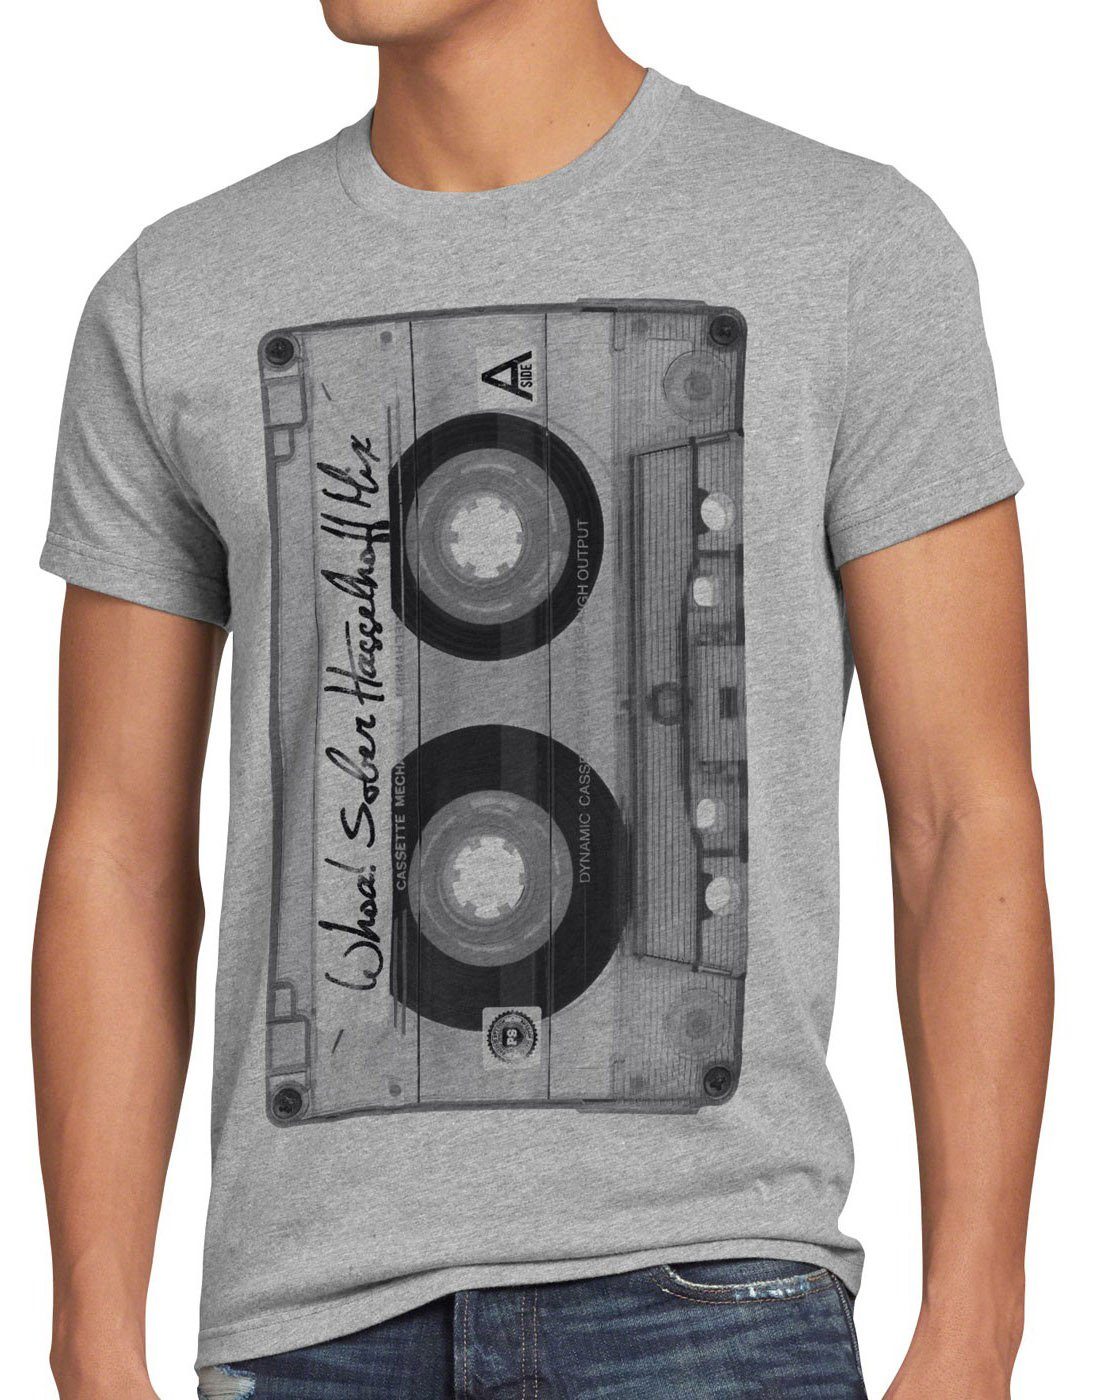 style3 Print-Shirt Herren T-Shirt DJ Kassetten fotodruck mc musik disco 80er 90er retro S M L XL XXL XXXL grau meliert